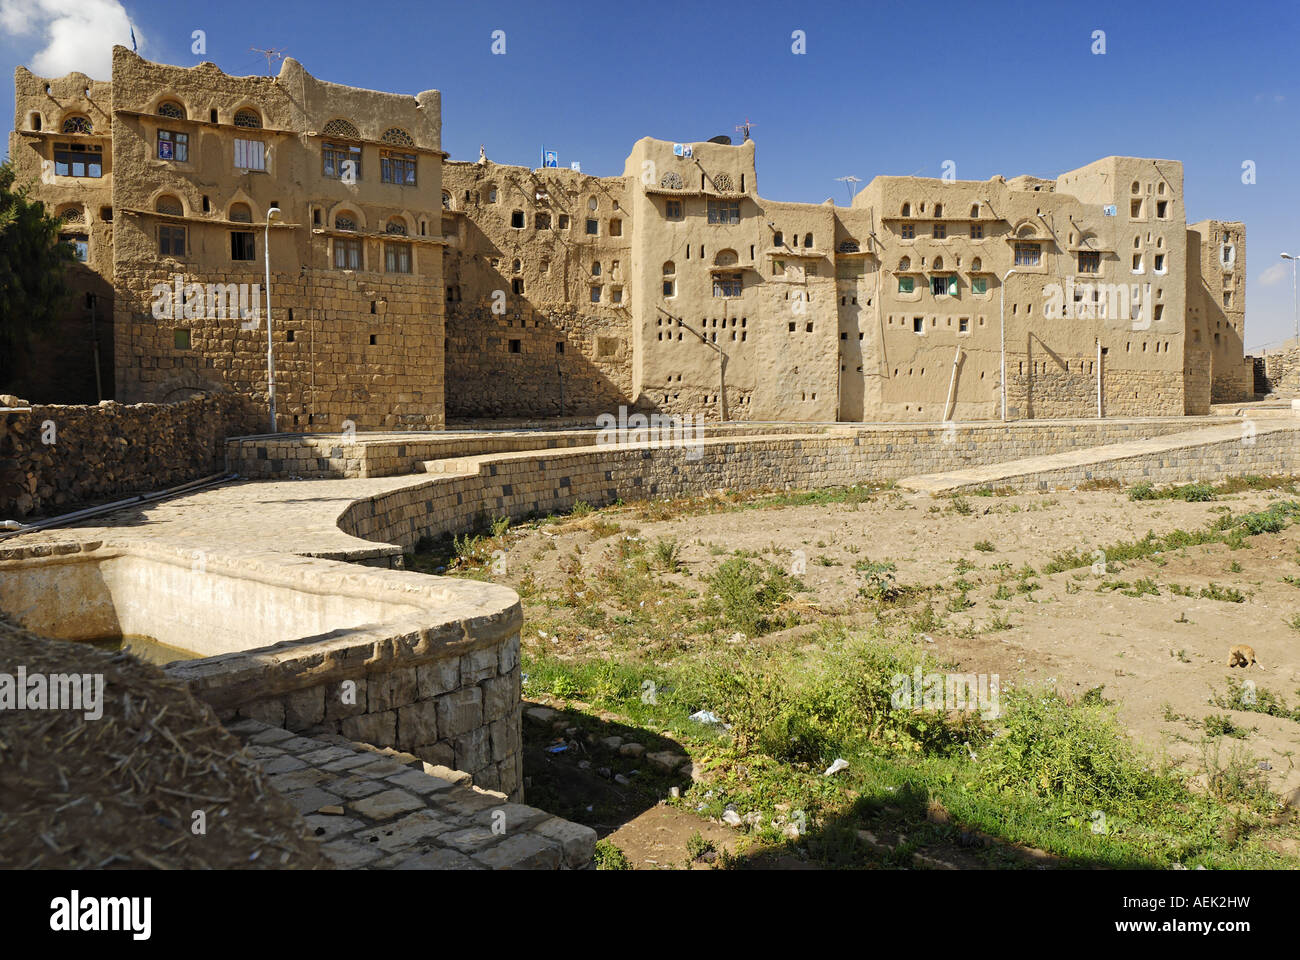 Vieille ville d'Amran, Yémen Banque D'Images